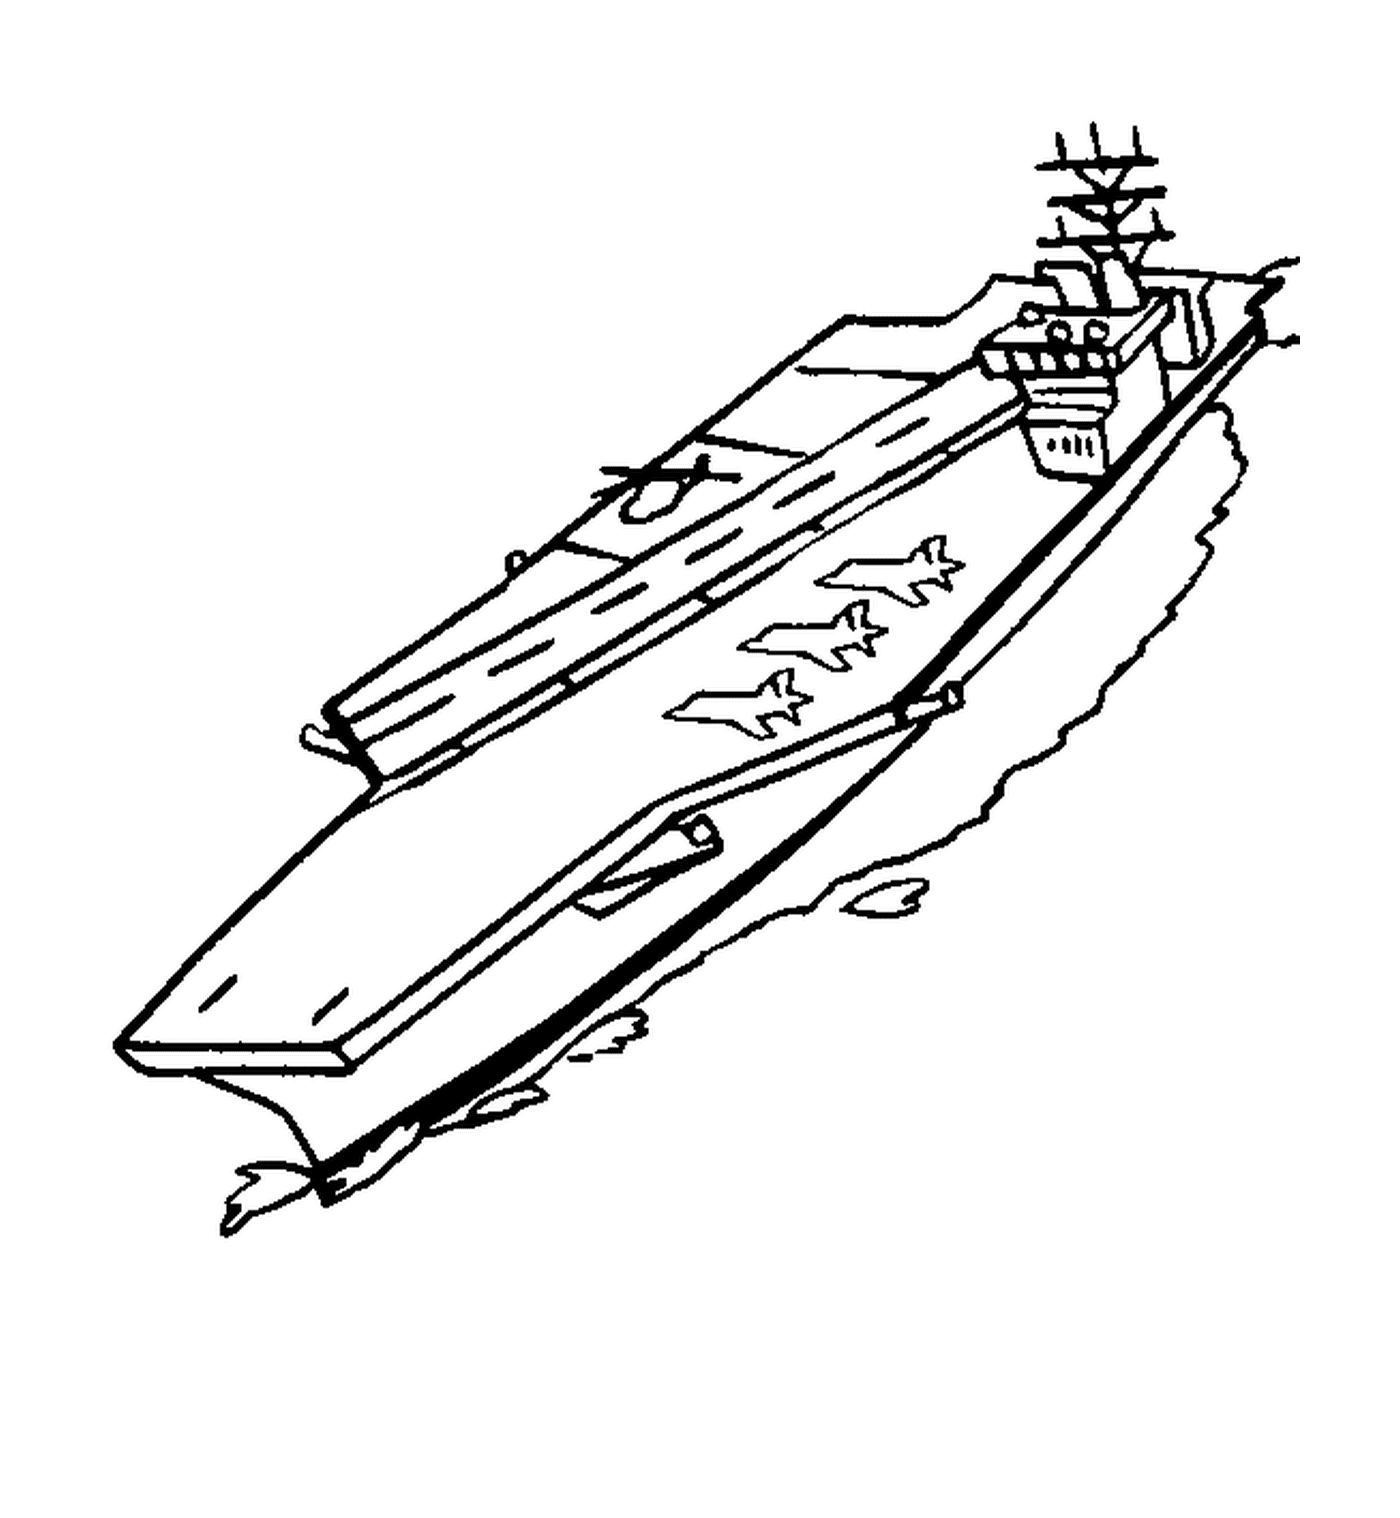  Ein Boot 